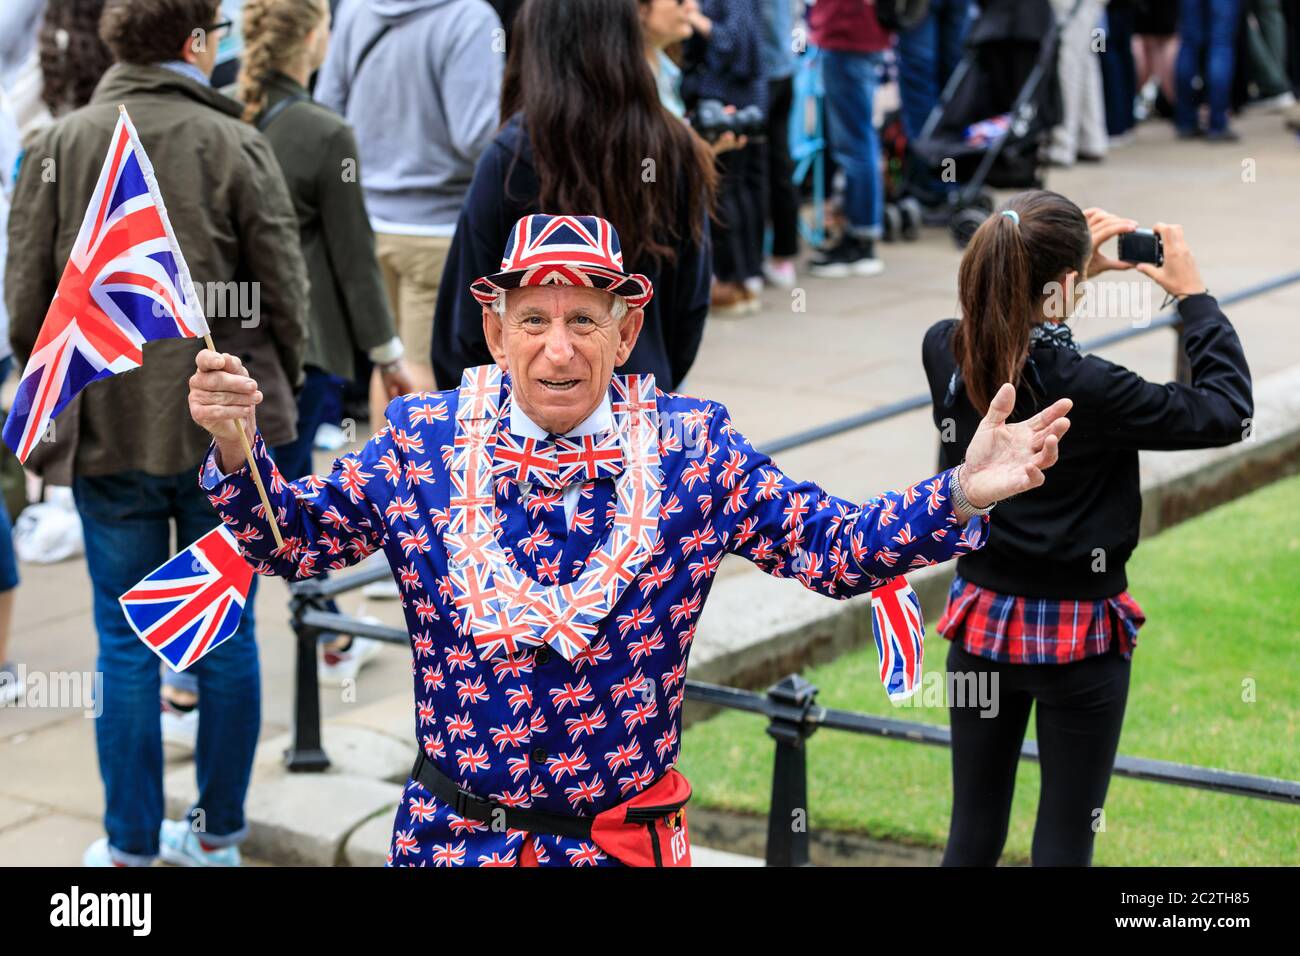 Ein königlicher Fan im Union Jack Outfit und Flaggen feiert bei der Trooping the Color Parade in London, England, Großbritannien Stockfoto